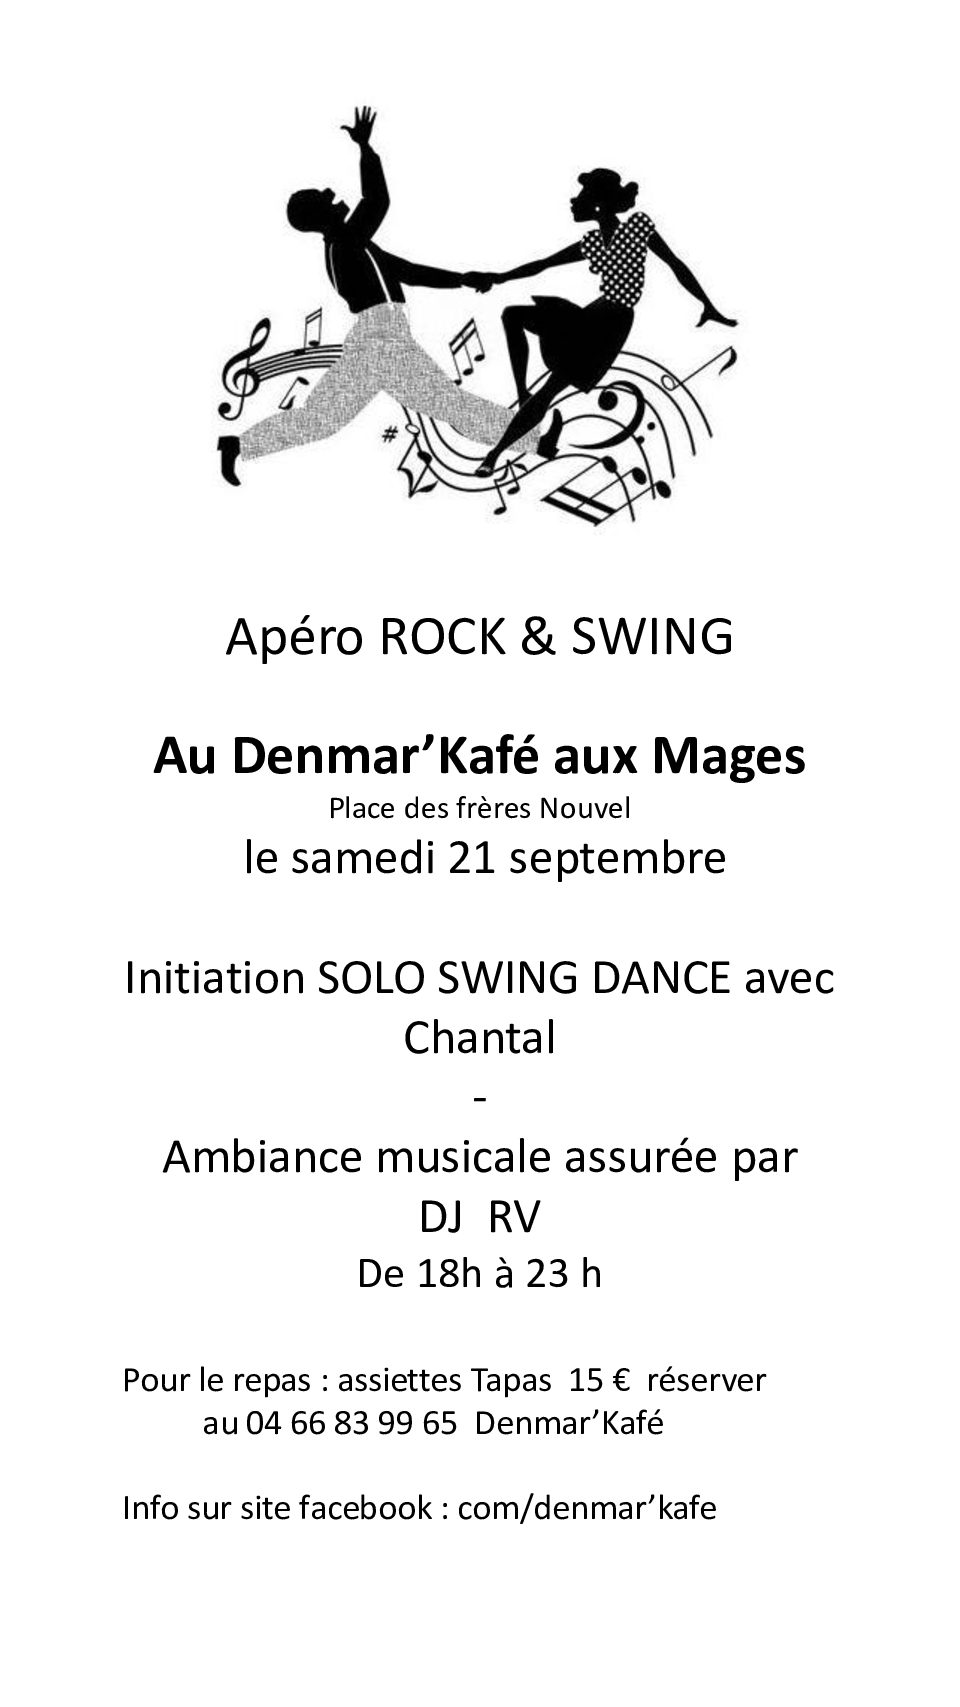 Soirée Rock swing au restaurant DenMar'Kafé  samedi 21/09 Les MAGES